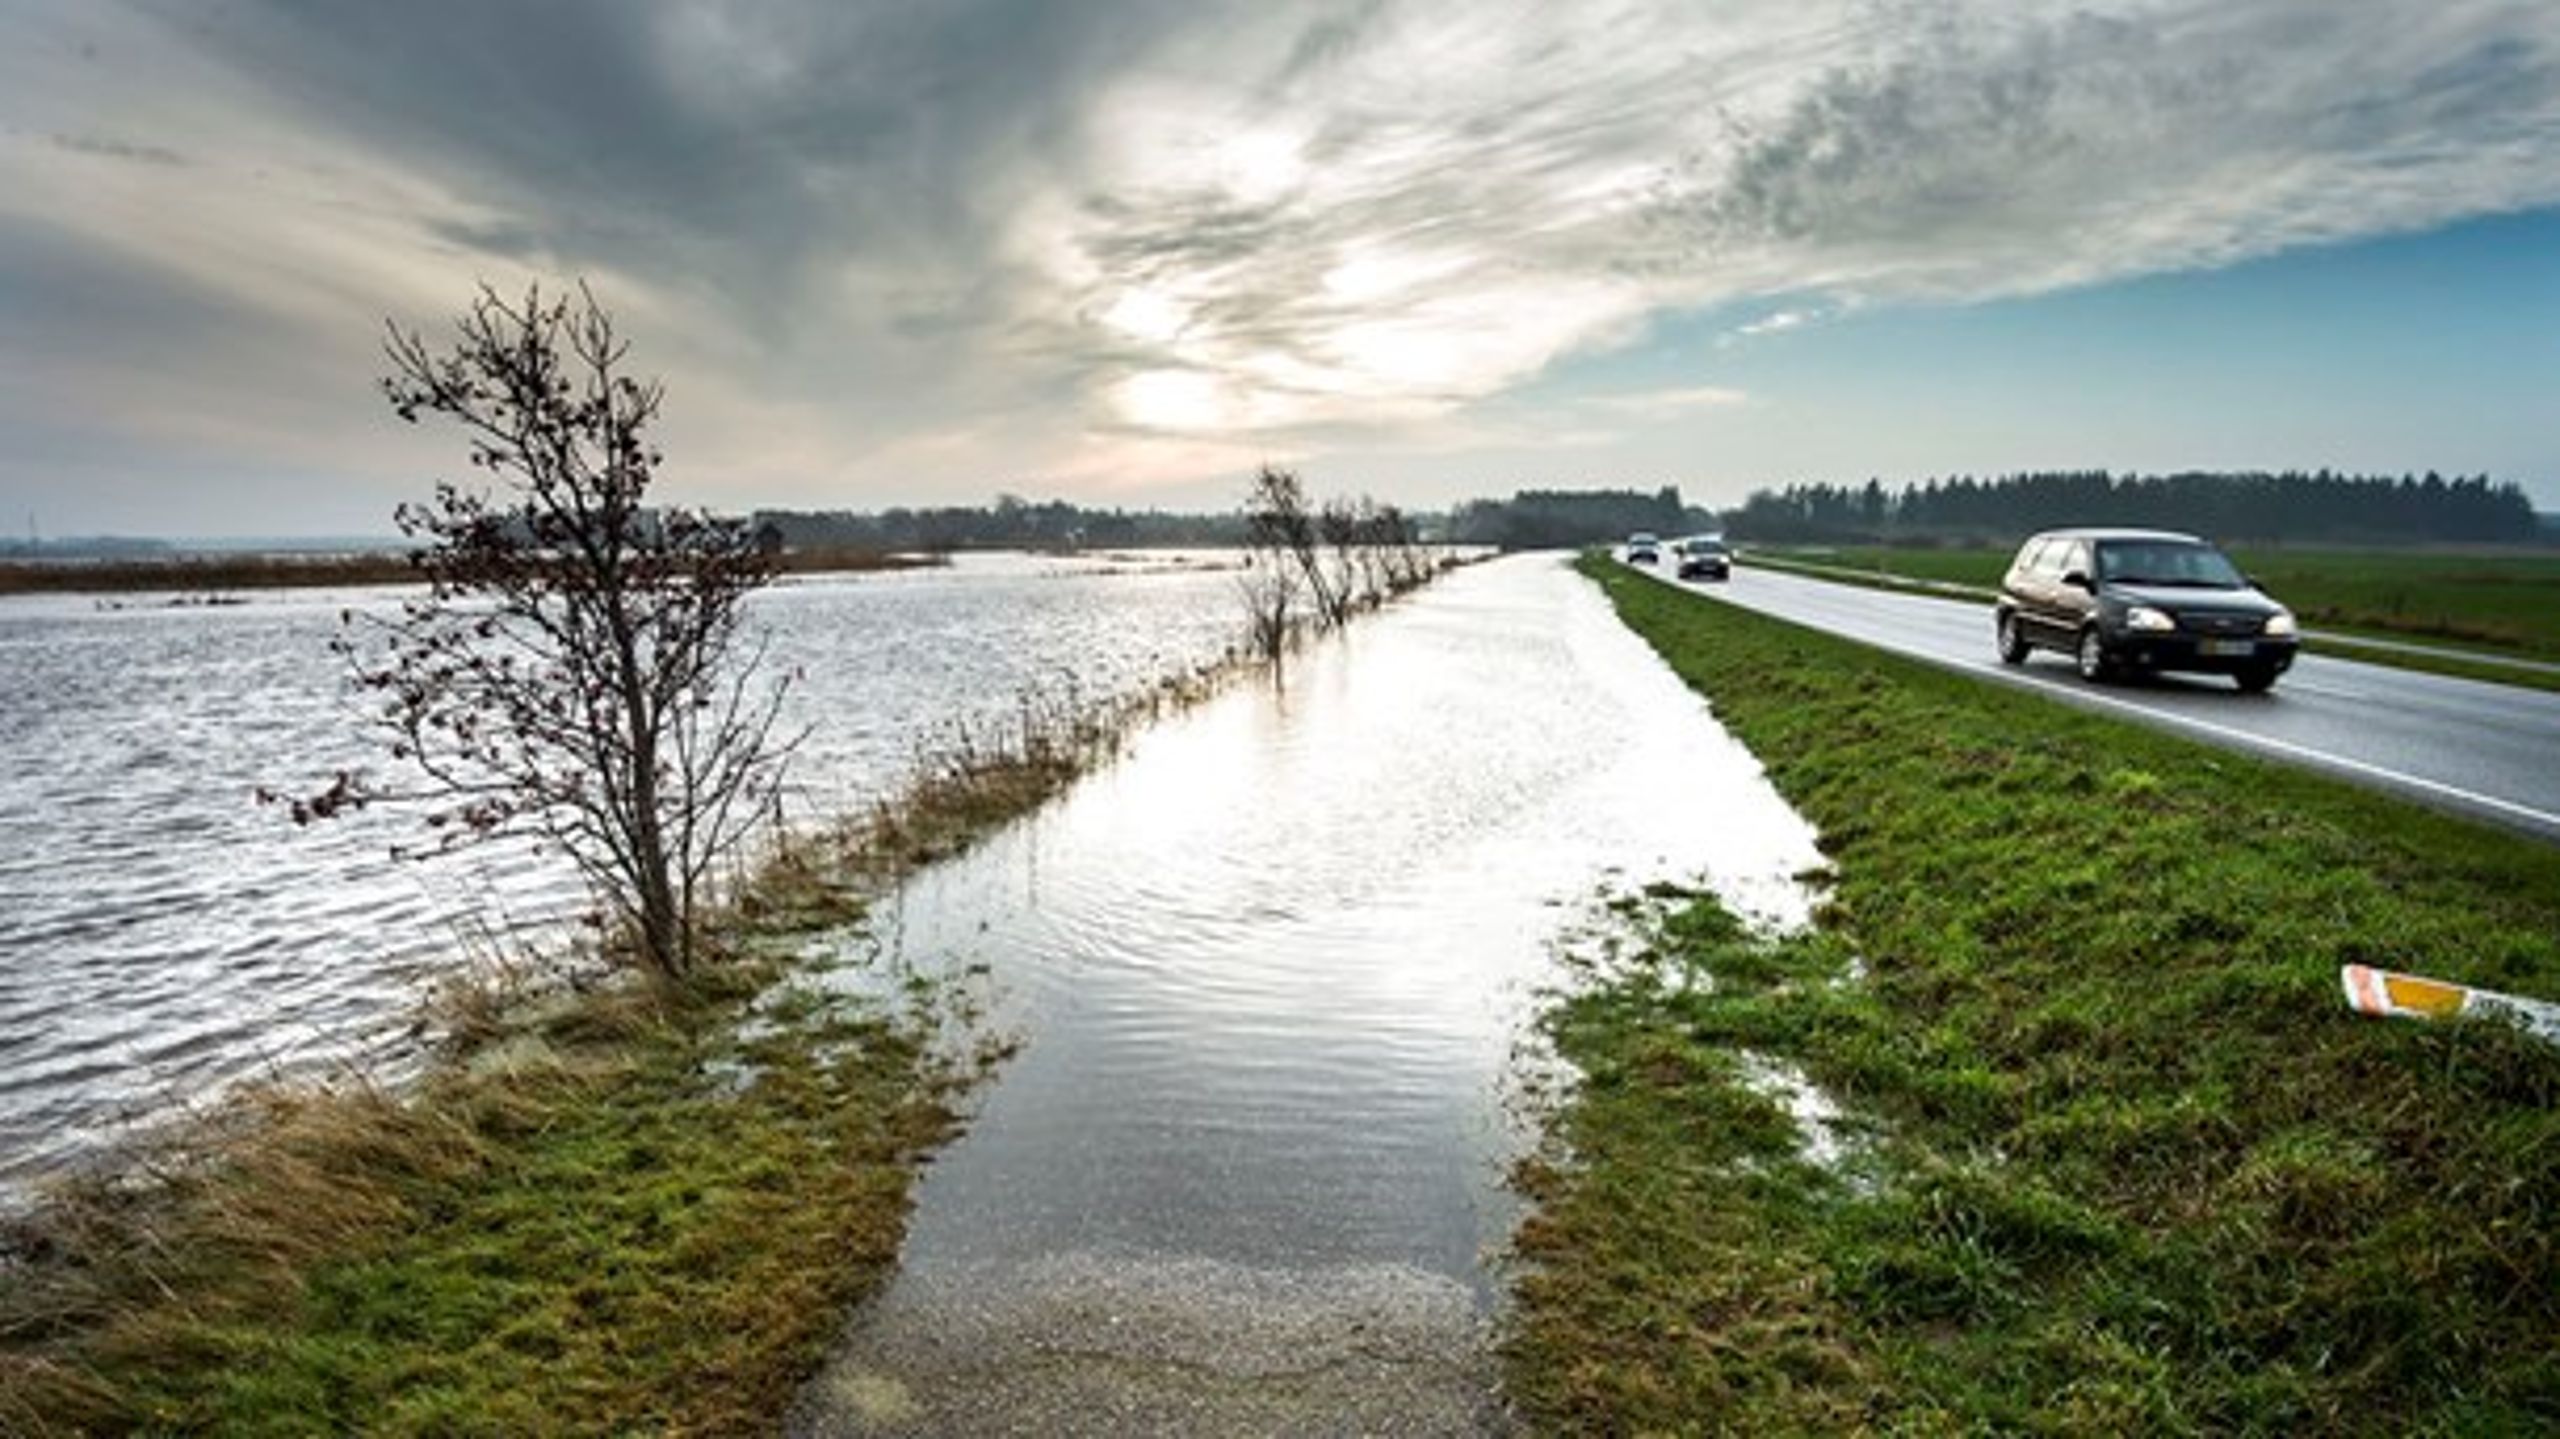 En del af årsagen til de mange oversvømmede og forsumpede marker rundt i Danmark er blandt andet en&nbsp;kombination af mere regn og et&nbsp;stigende havvandspejl. Men landmandens dræning er også en del af problemet.&nbsp;&nbsp;